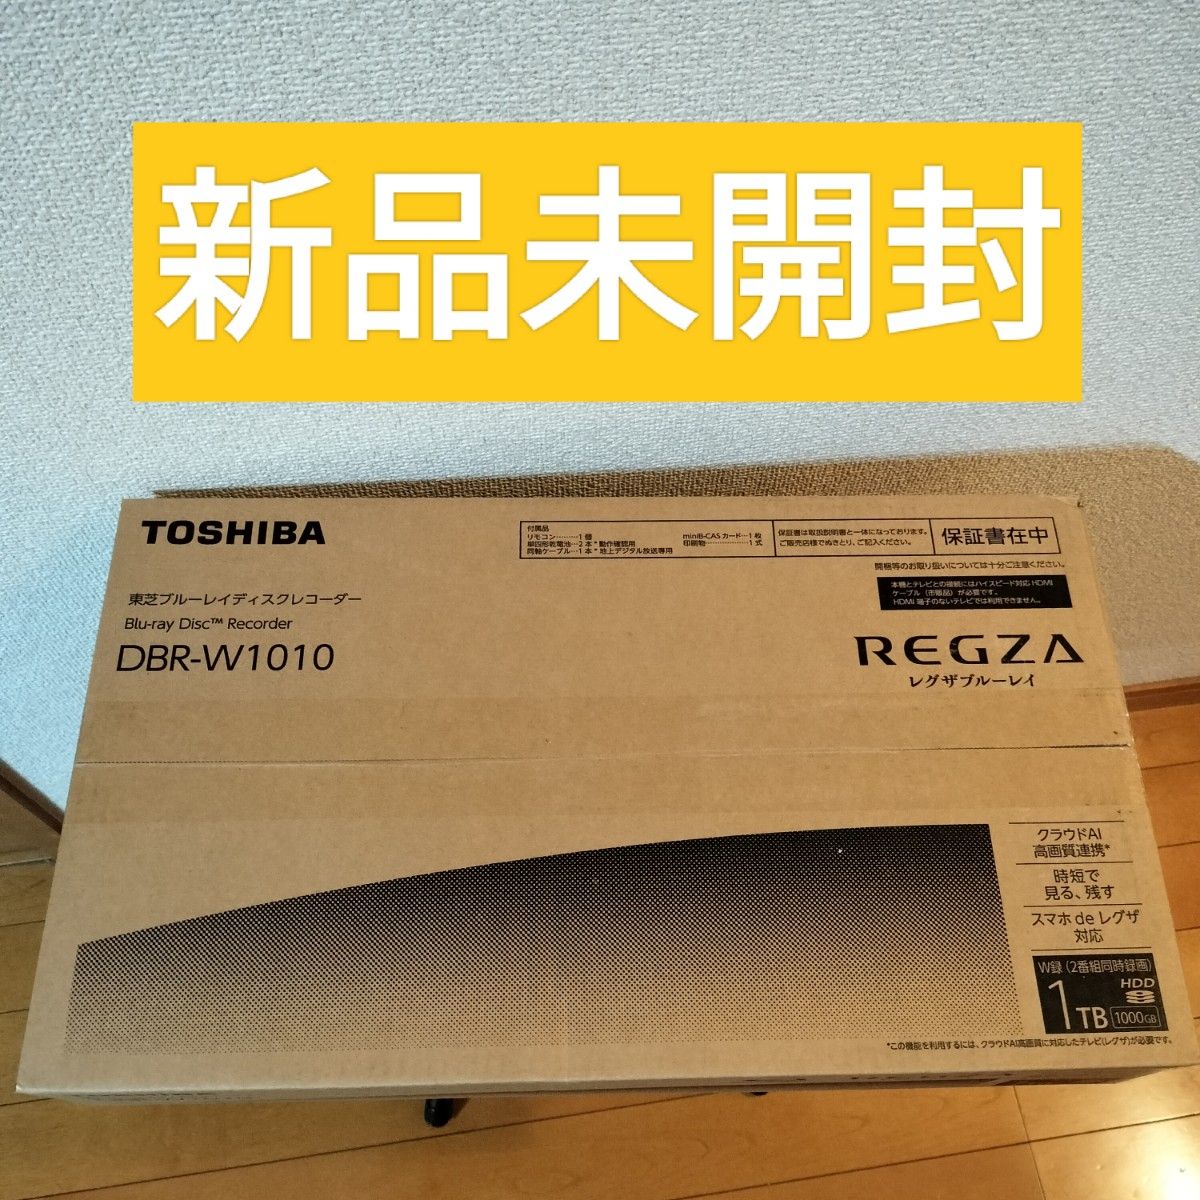 新品未開封】レグザブルーレイ DBR-W1010 東芝 REGZA TOSHIBA